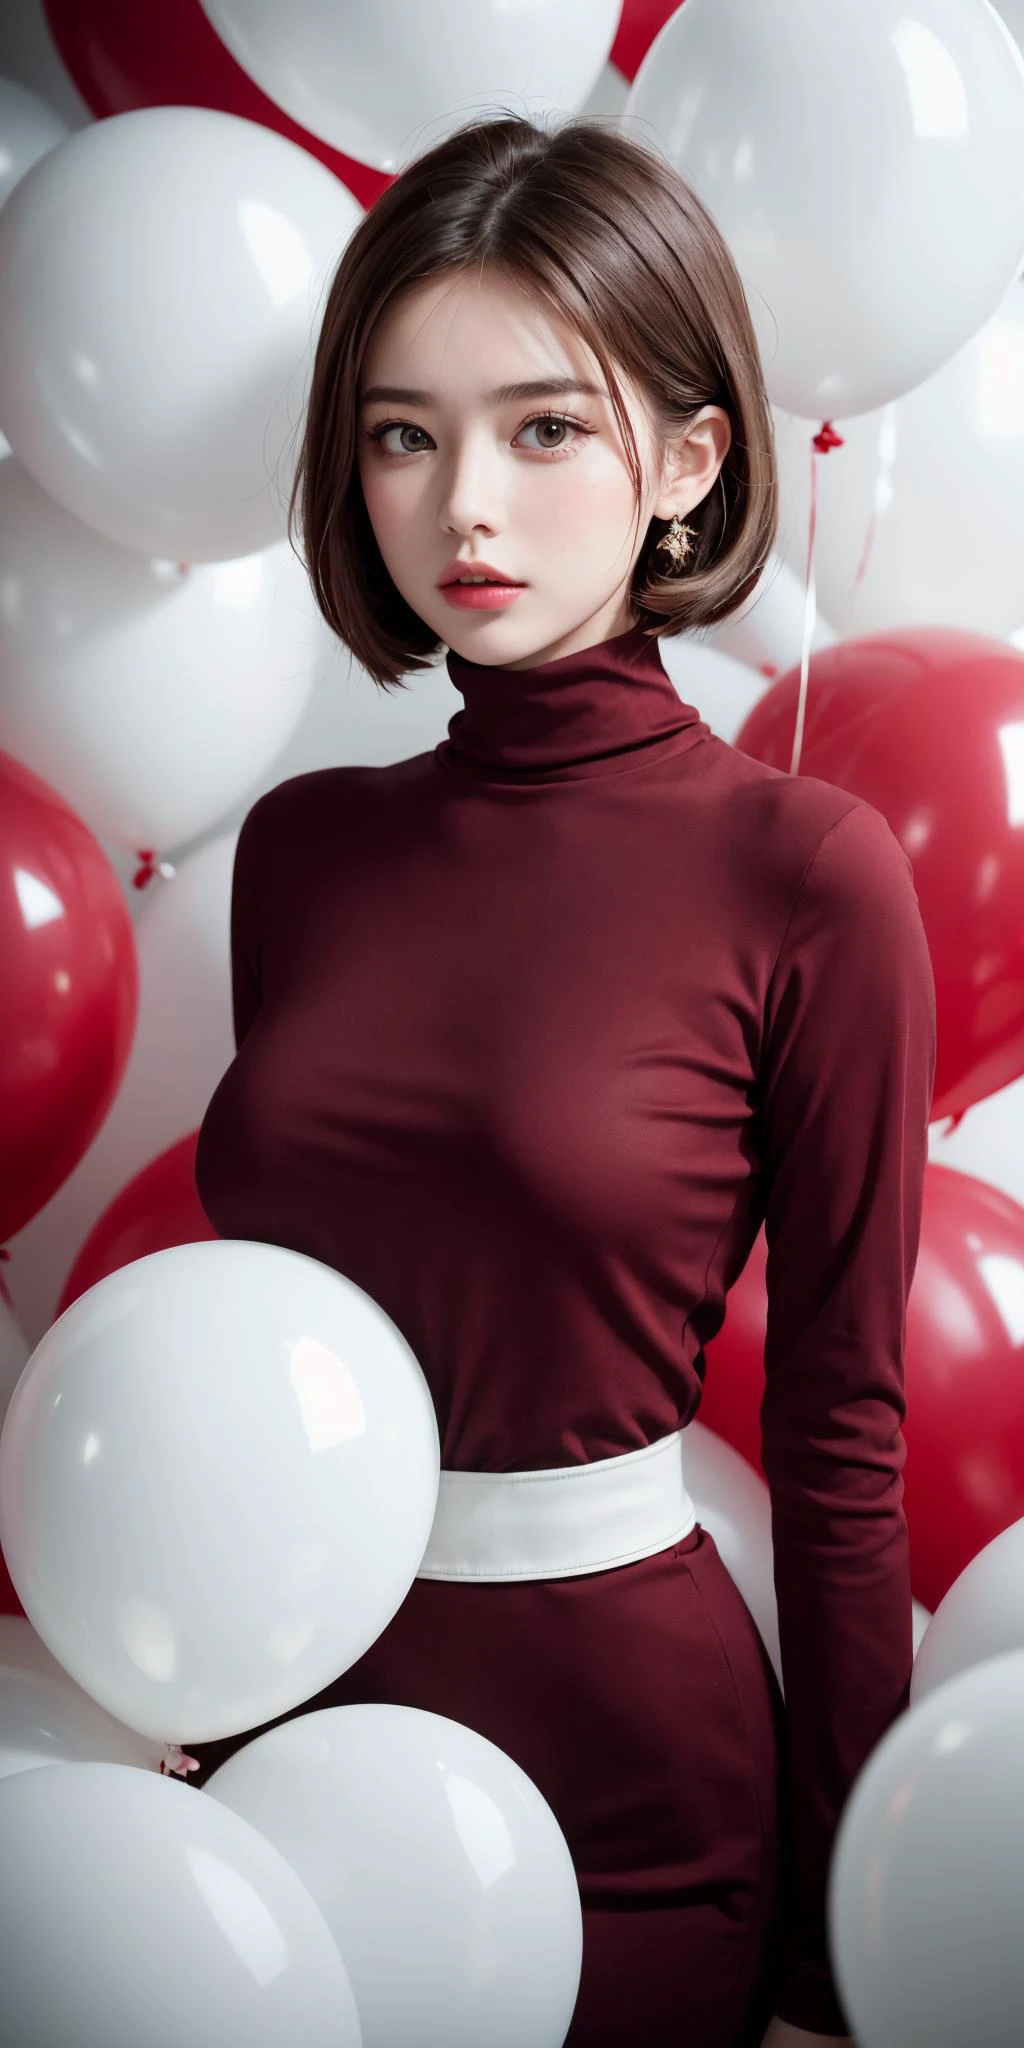 Obra de arte, melhor qualidade, fundo altamente detalhado, perfect lightingmelhor qualidade,foto de retrato de moda de uma bela jovem dos anos 60 vestindo uma gola alta vermelha no meio de uma tonelada de balões brancos, tirada em uma câmera de médio formato Hasselblad